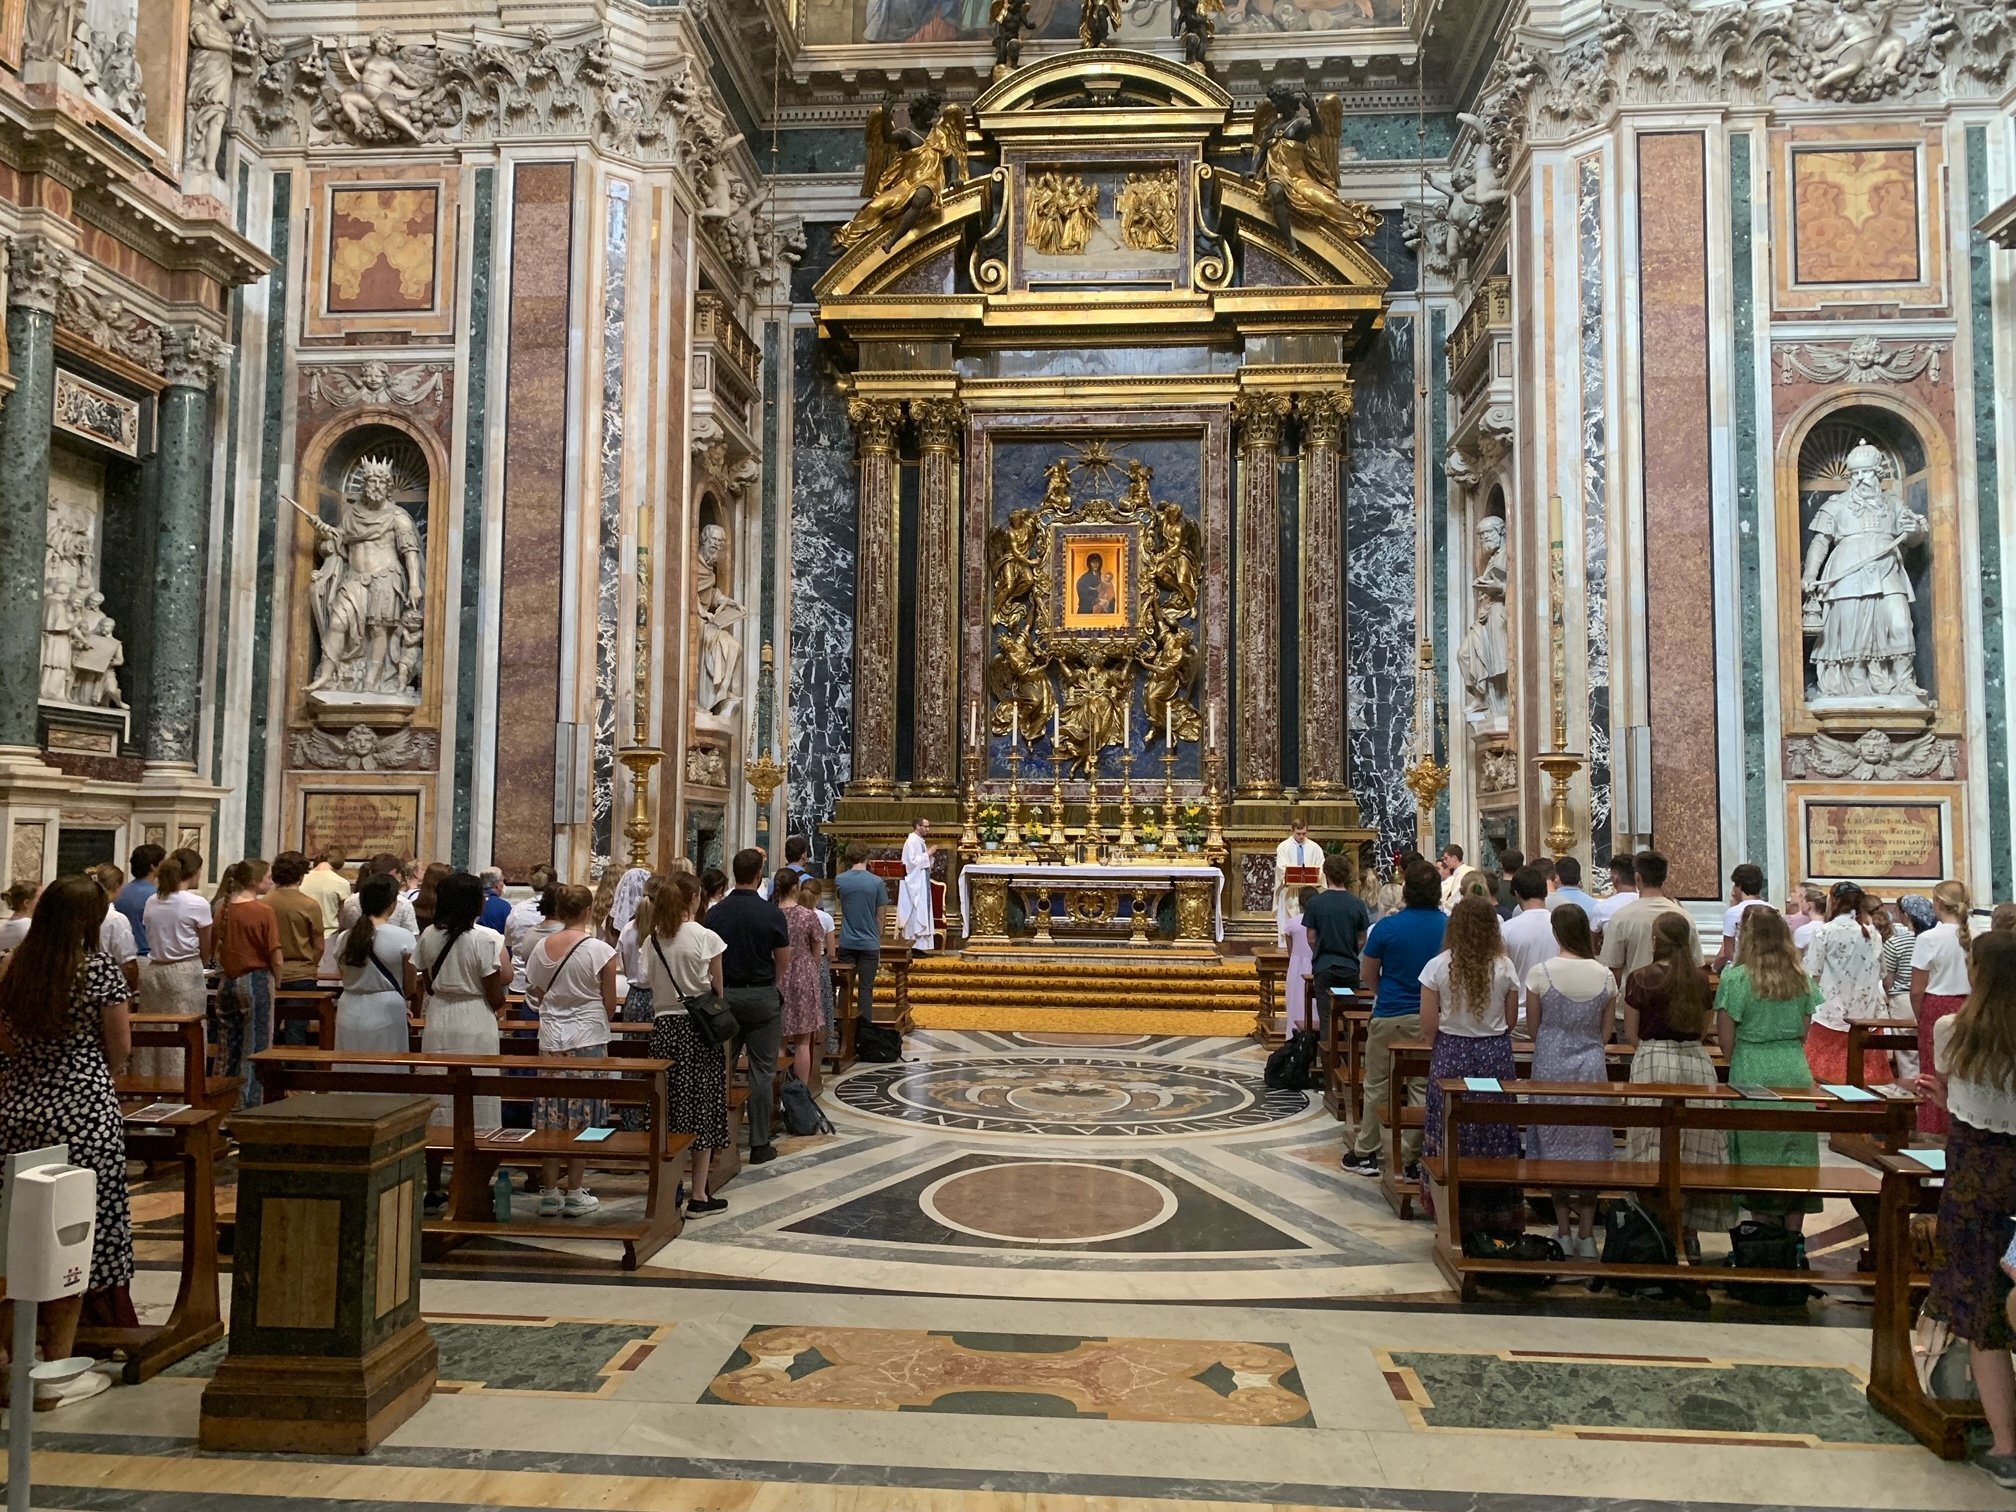 June 21, 2022: First Mass as a Full Pilgrim Group